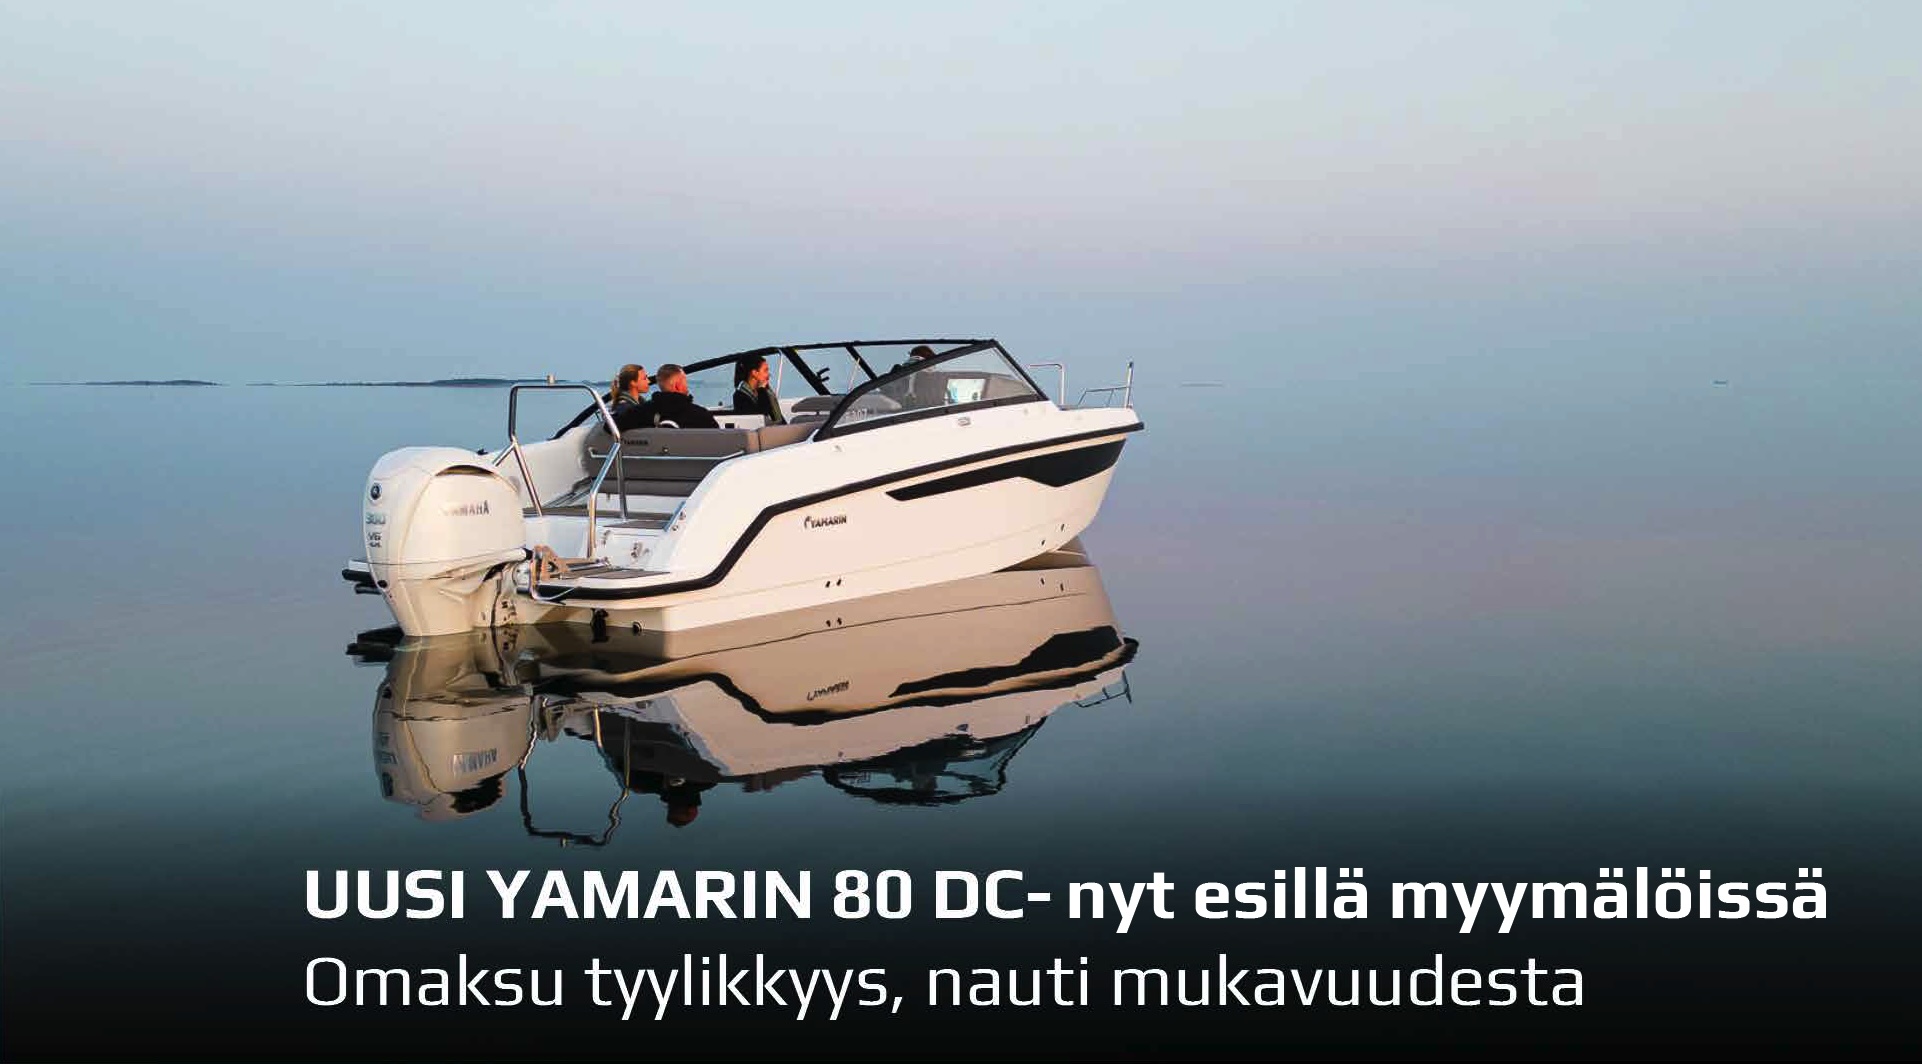 Uusi Yamarin 80 DC yhdistää pohjoismaisen käytännöllisyyden välimerelliseen veneilykulttuuriin. Tule tutustumaan Turkuun tai Vantaalle!